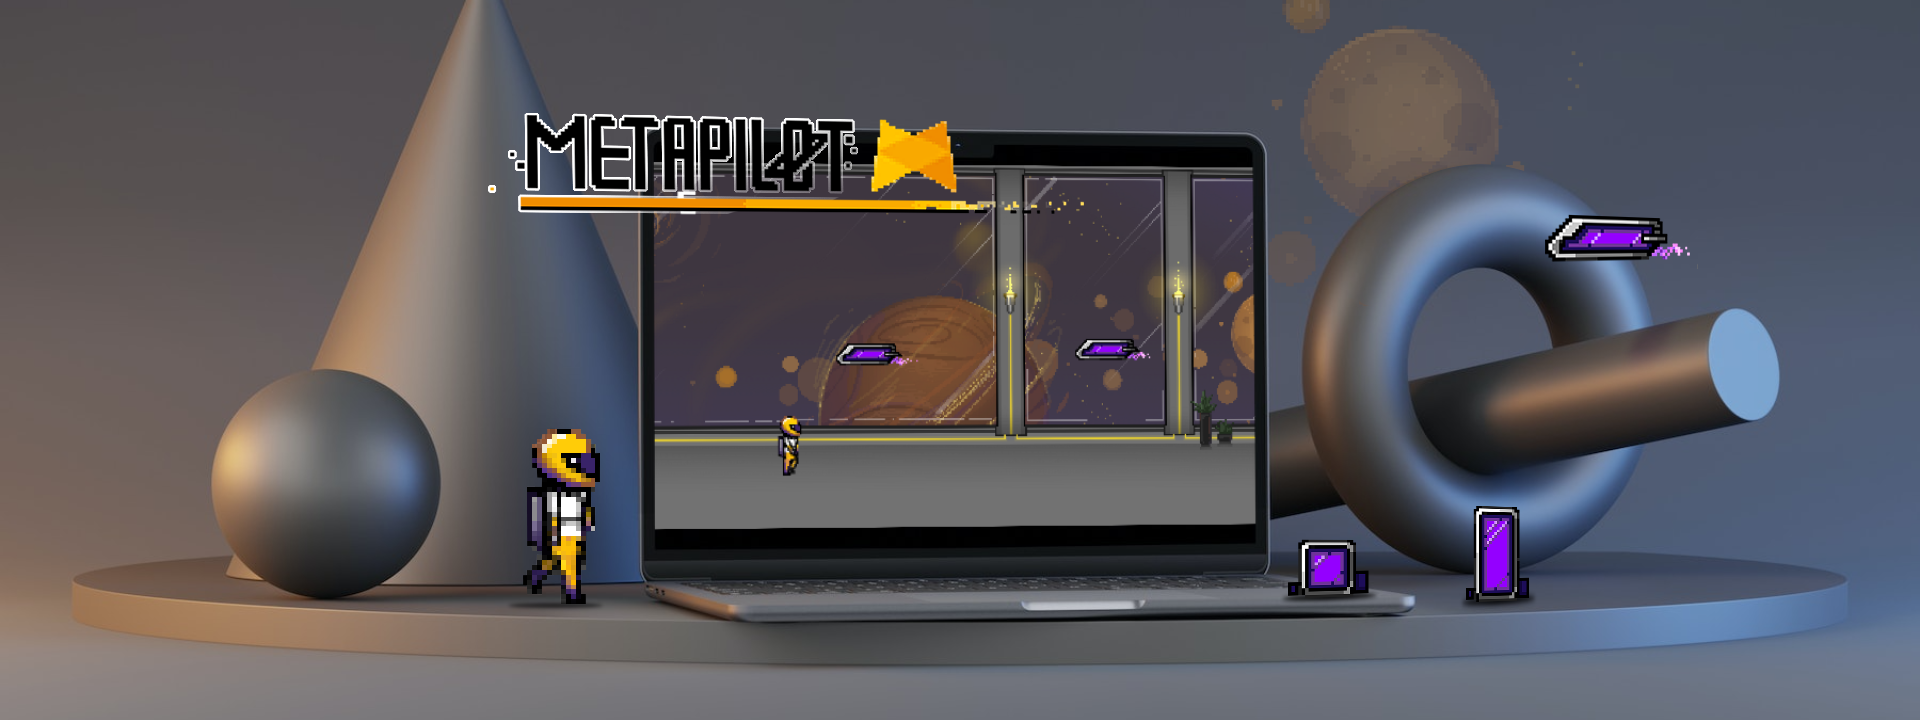 Metapilots Jump'n'Run Minigame zur Interaktion und Gamification